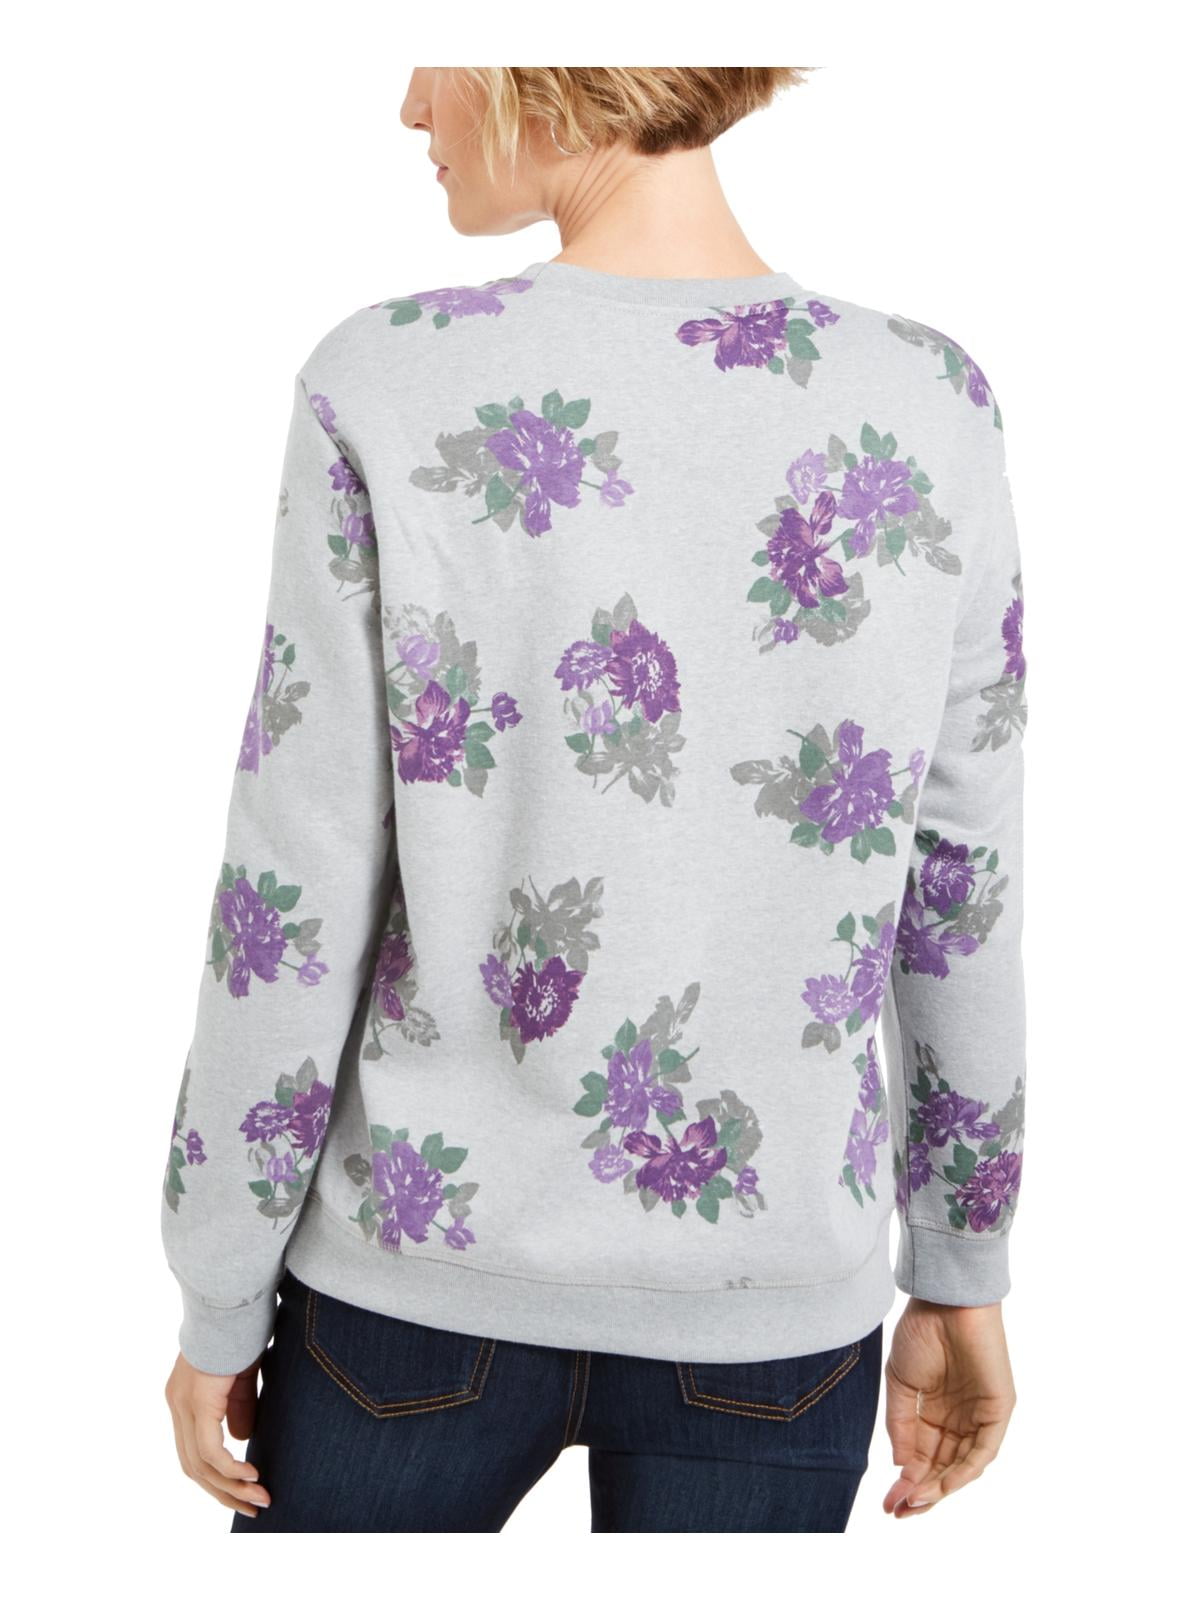 flower printed sweatshirt